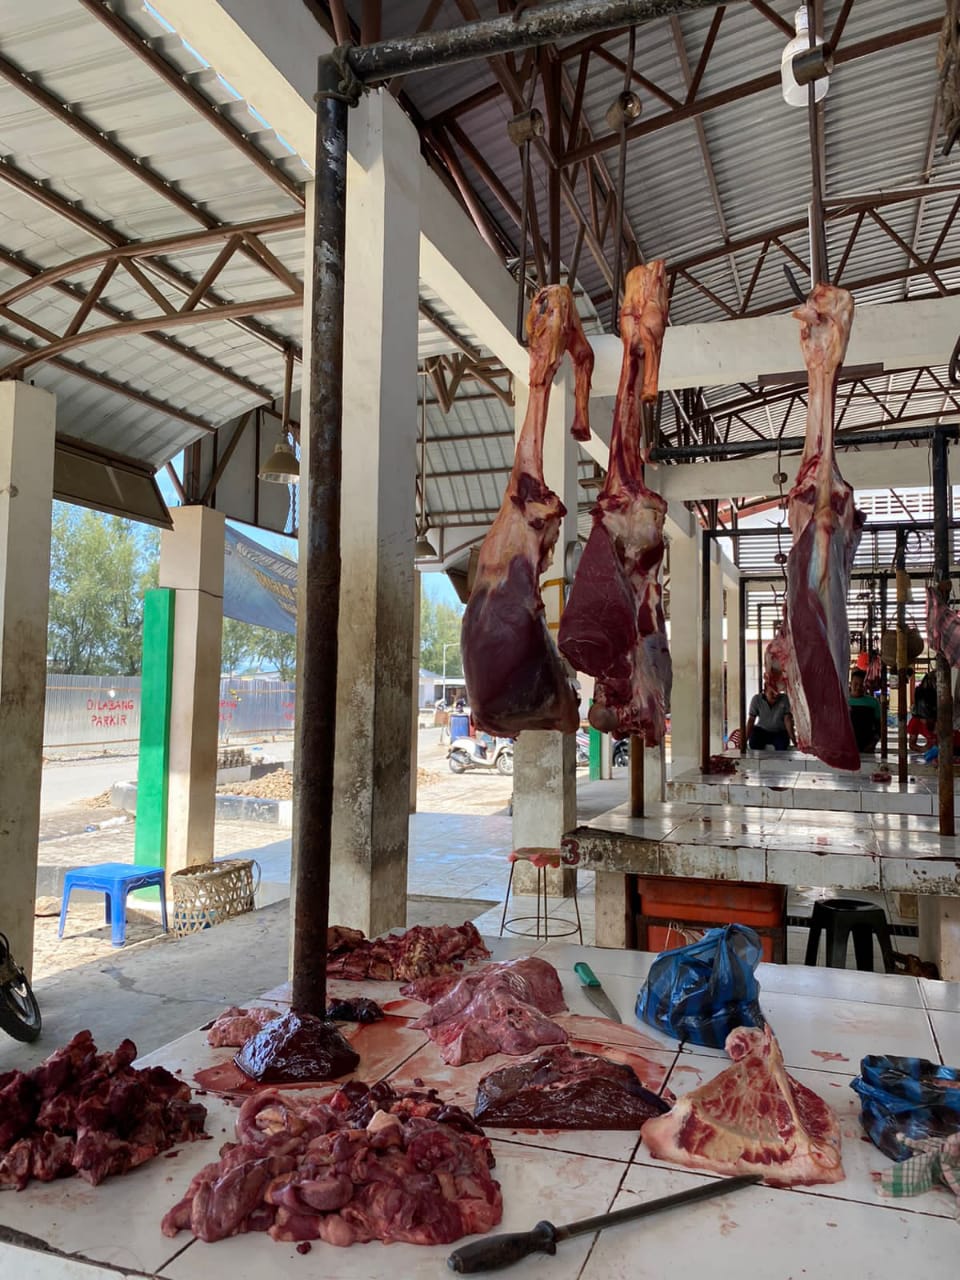 Taufiq: Masyarakat Jadi Takut Beli Daging Sapi Karena Kasus PMK